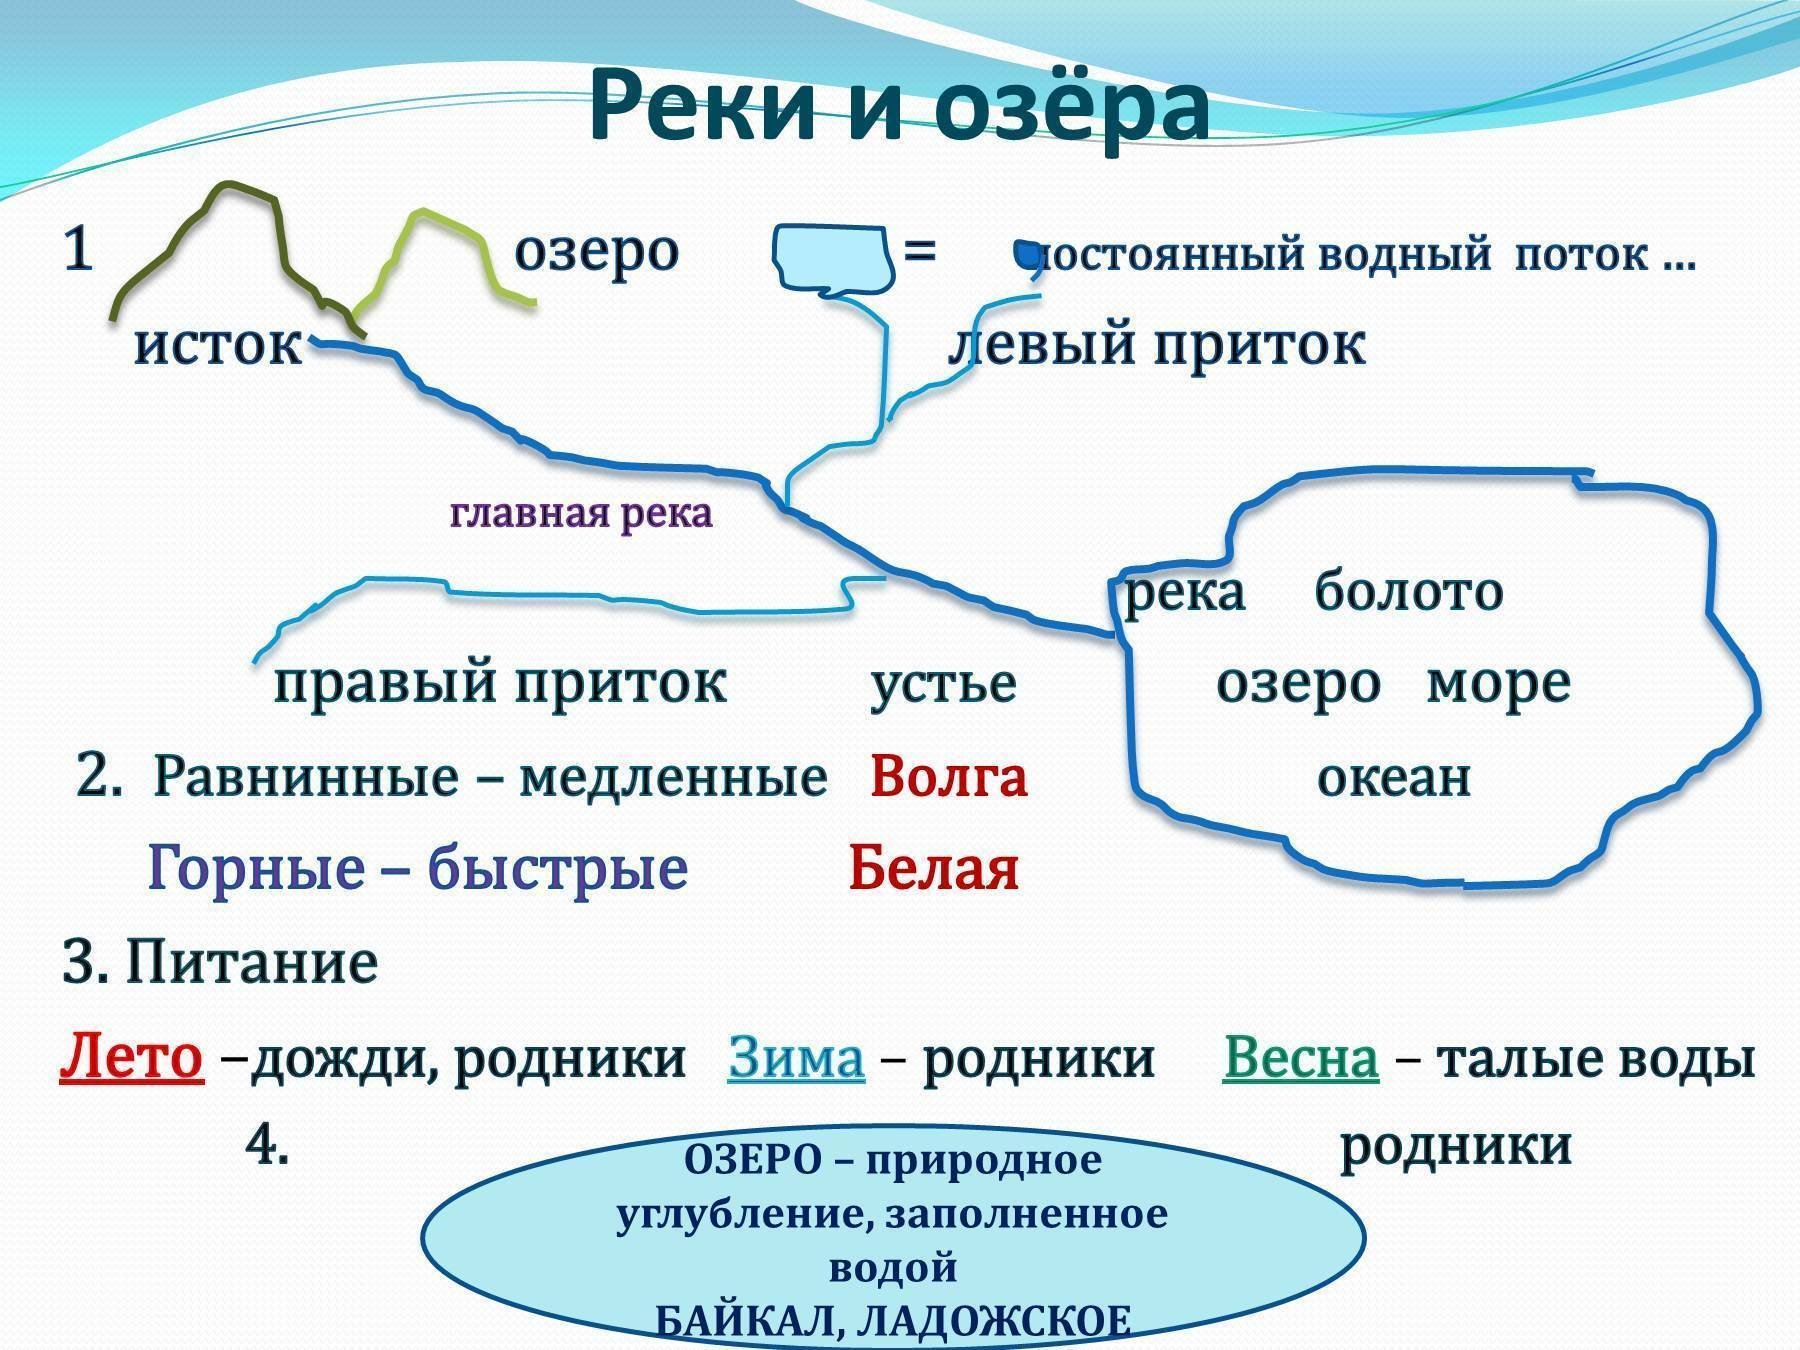 Конспект реки России. Презентация по теме реки. Схема рек России. Конспект на тему реки. Почему некоторые реки